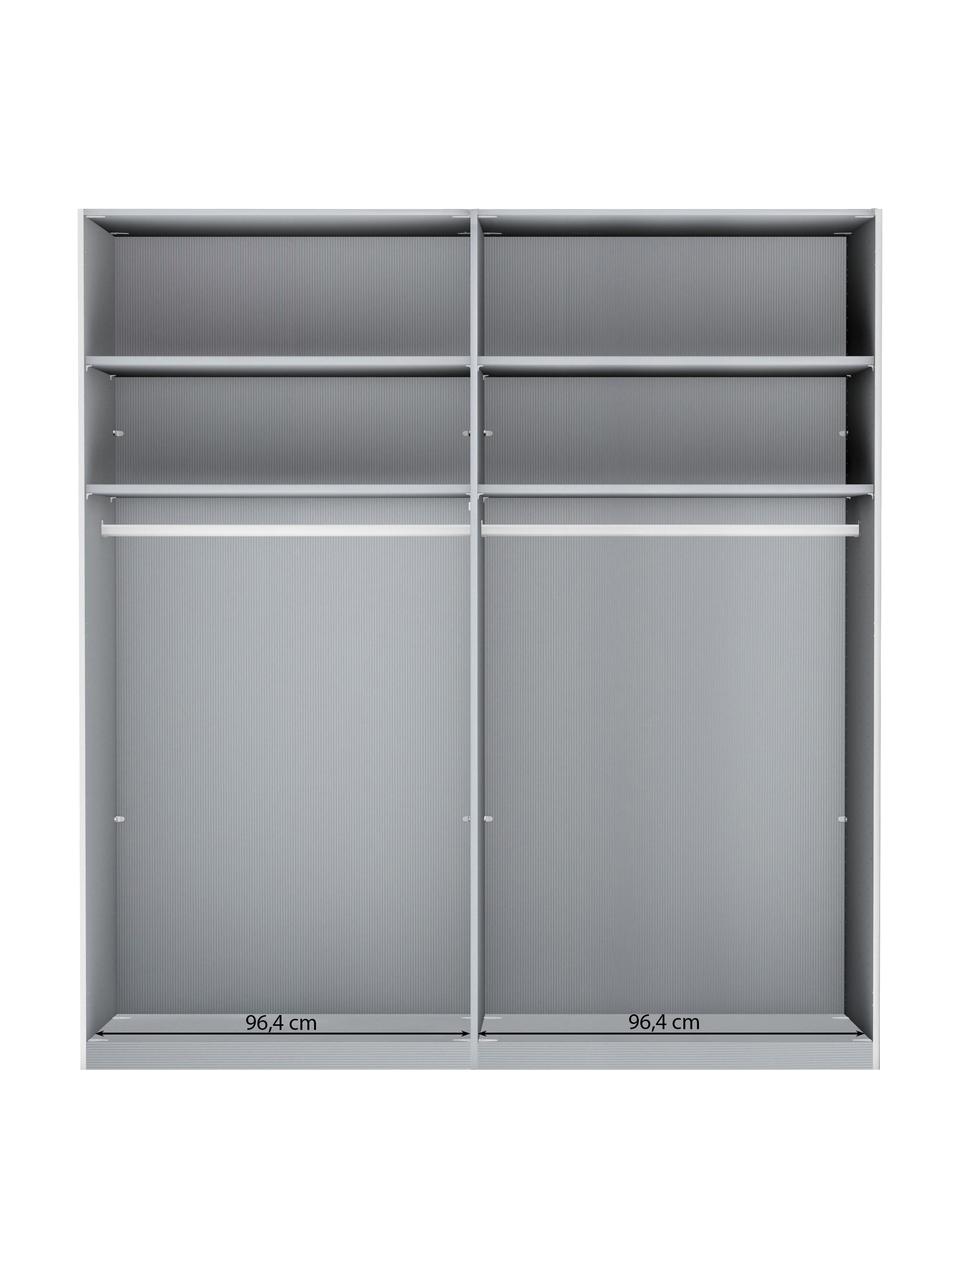 Skříň s posuvnými dveřmi Montreal, 2dvéřová, Zrcadlové sklo, Š 200 cm, V 217 cm